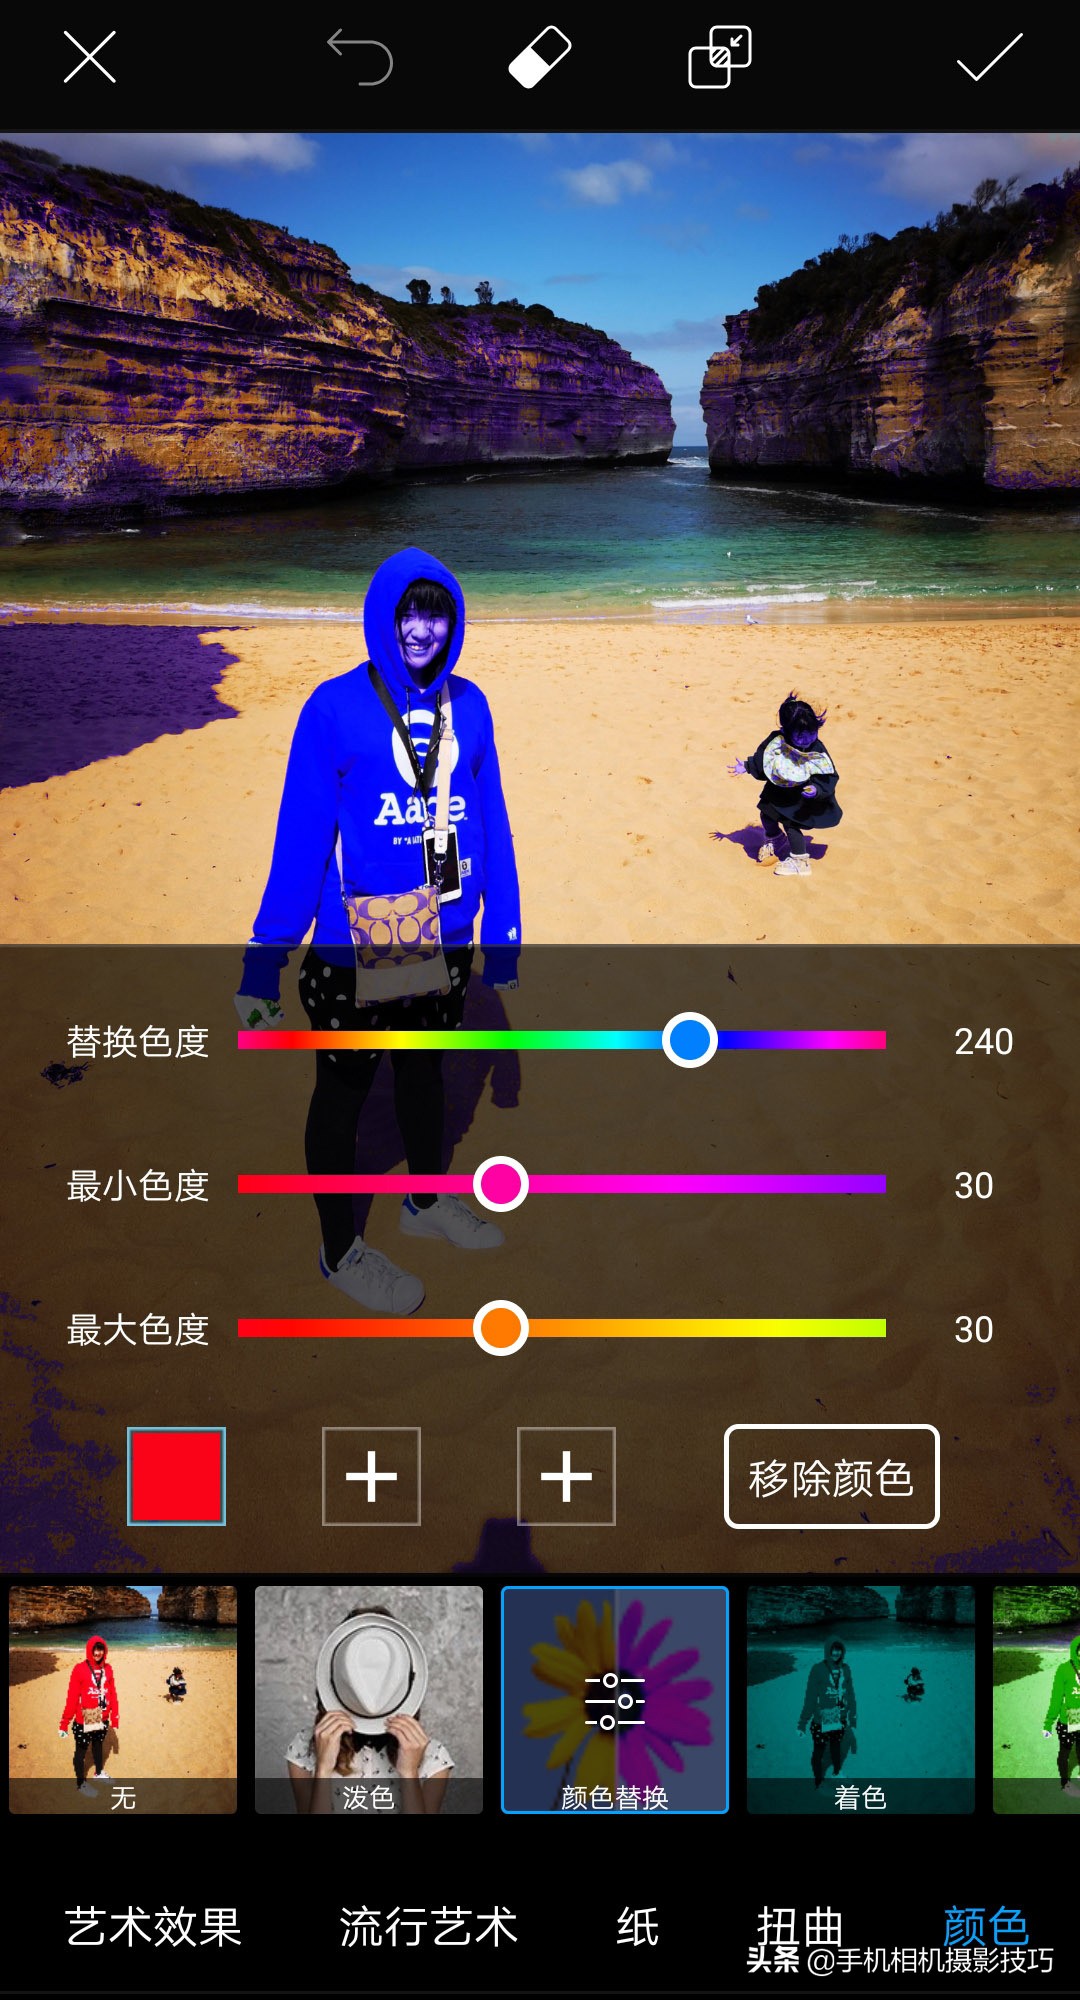 手机p图换衣服颜色的软件 手机p图怎么改衣服颜色